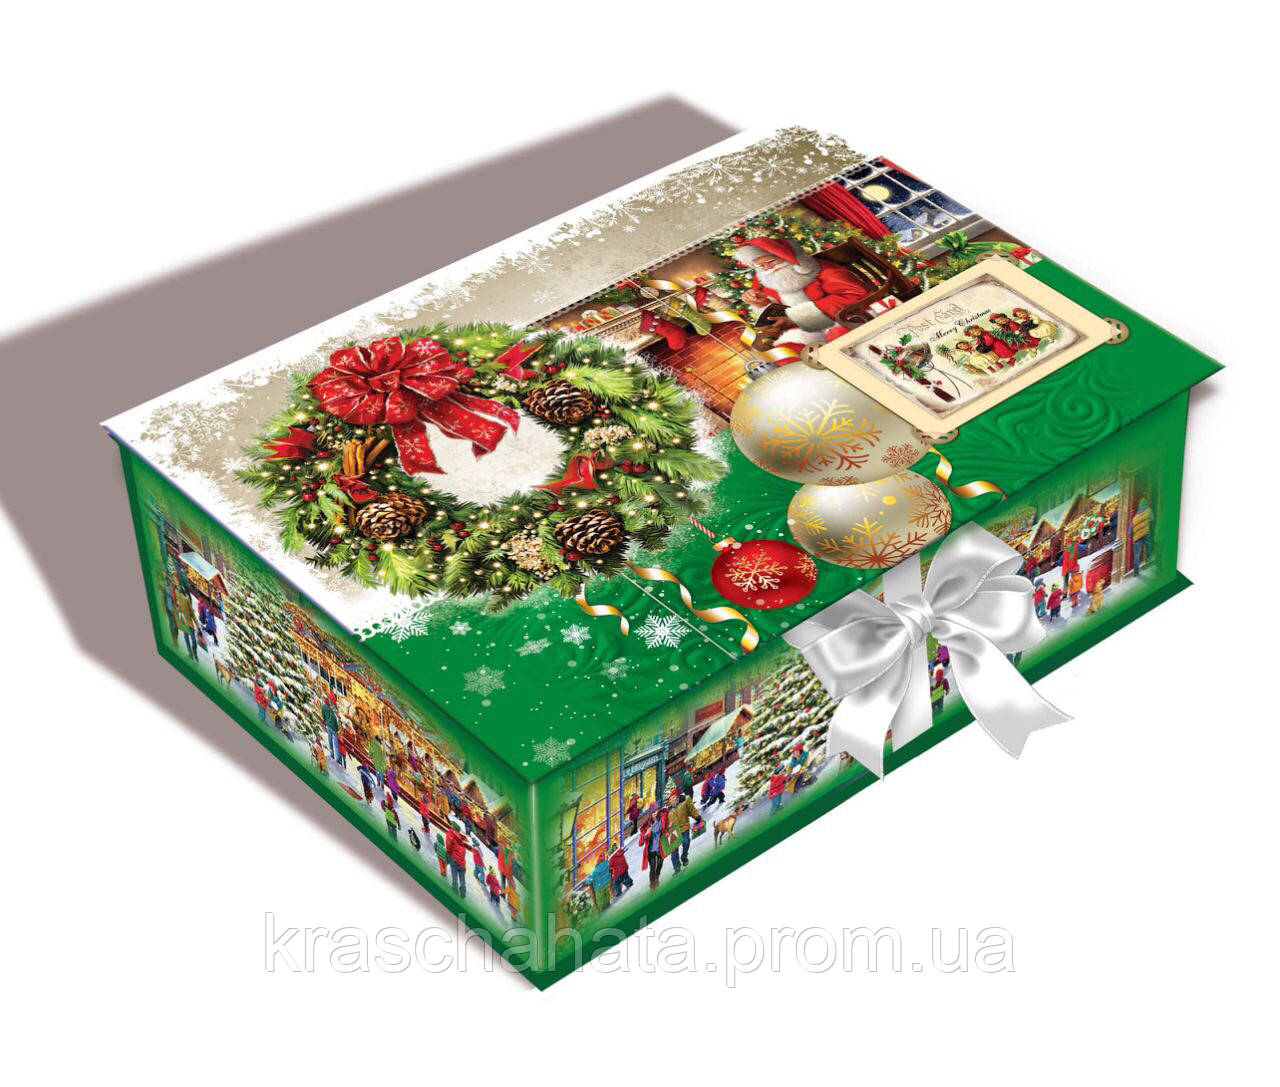 Новорічна упаковка для цукерок, Тигрень Санта, Різдвяна шкатулка з стрічкою, 1000 грамів